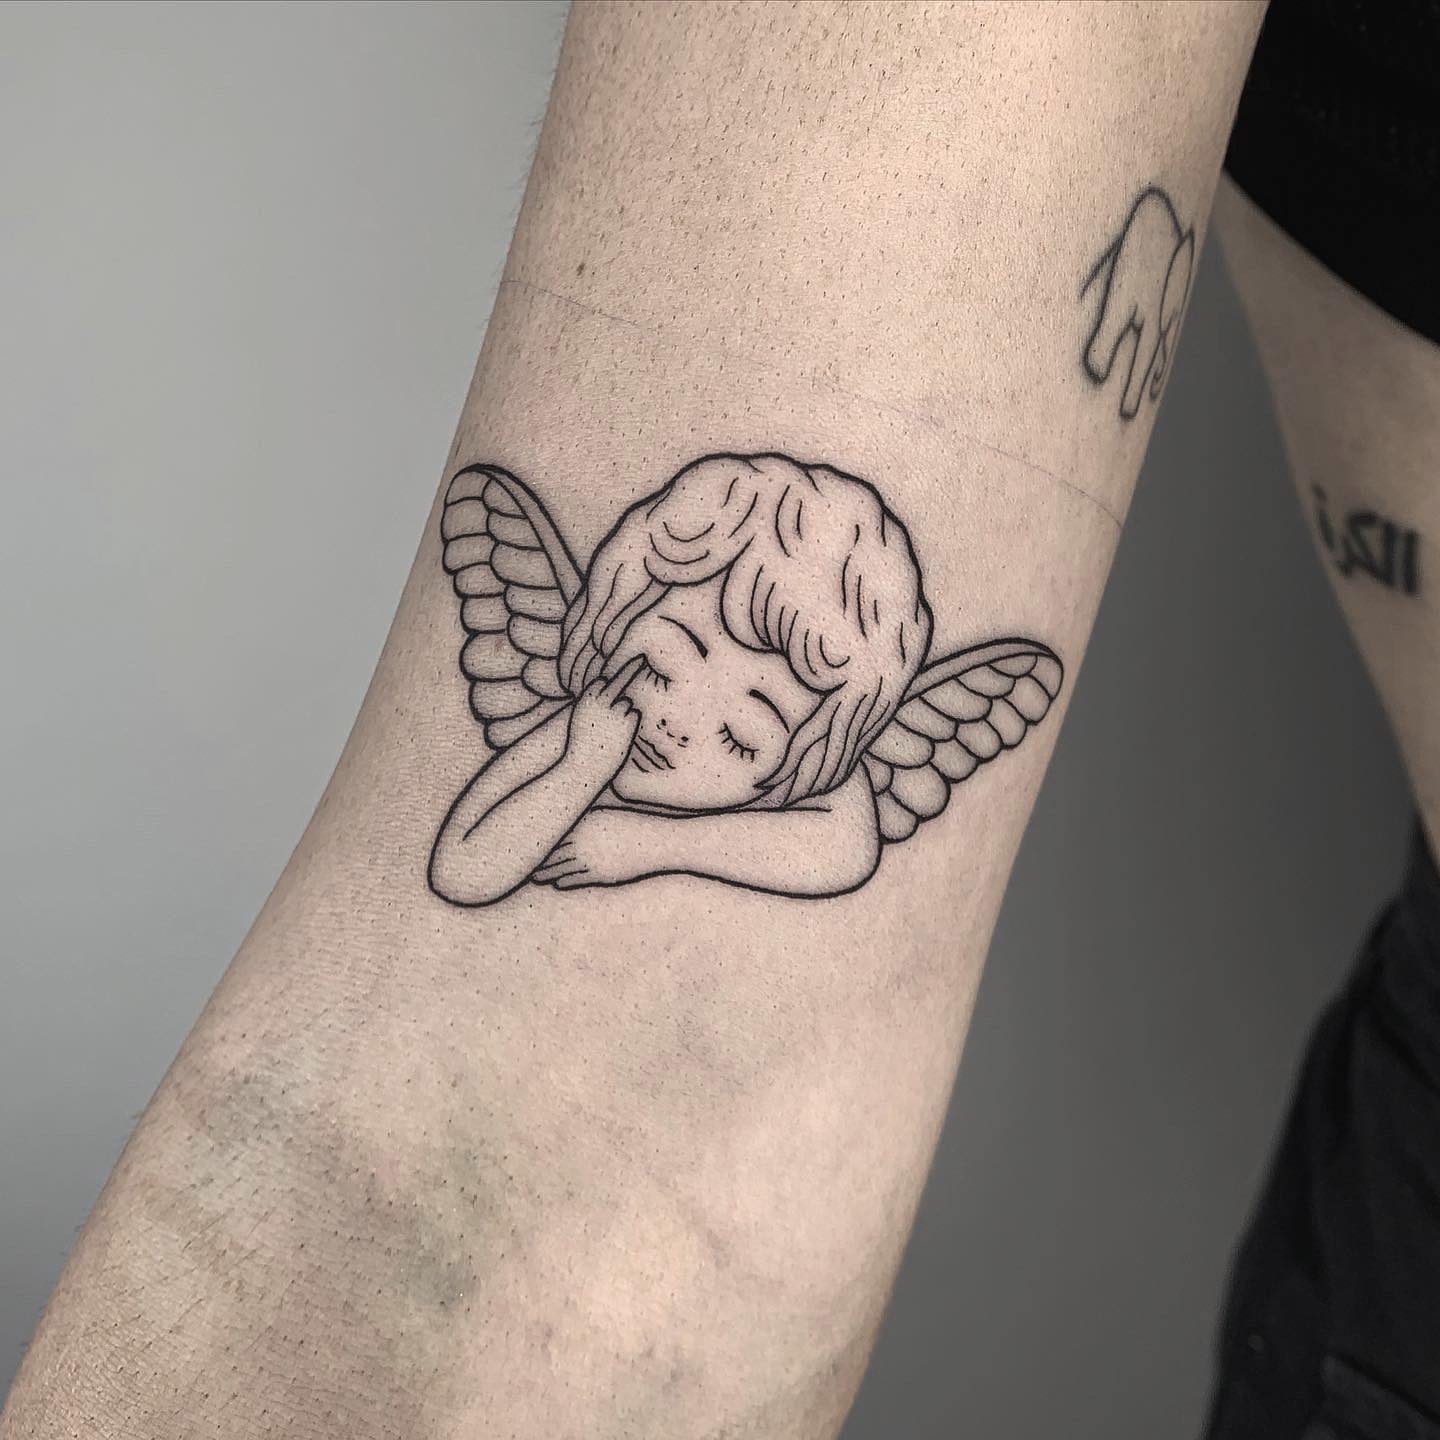 Tatuaje de alas de ángel